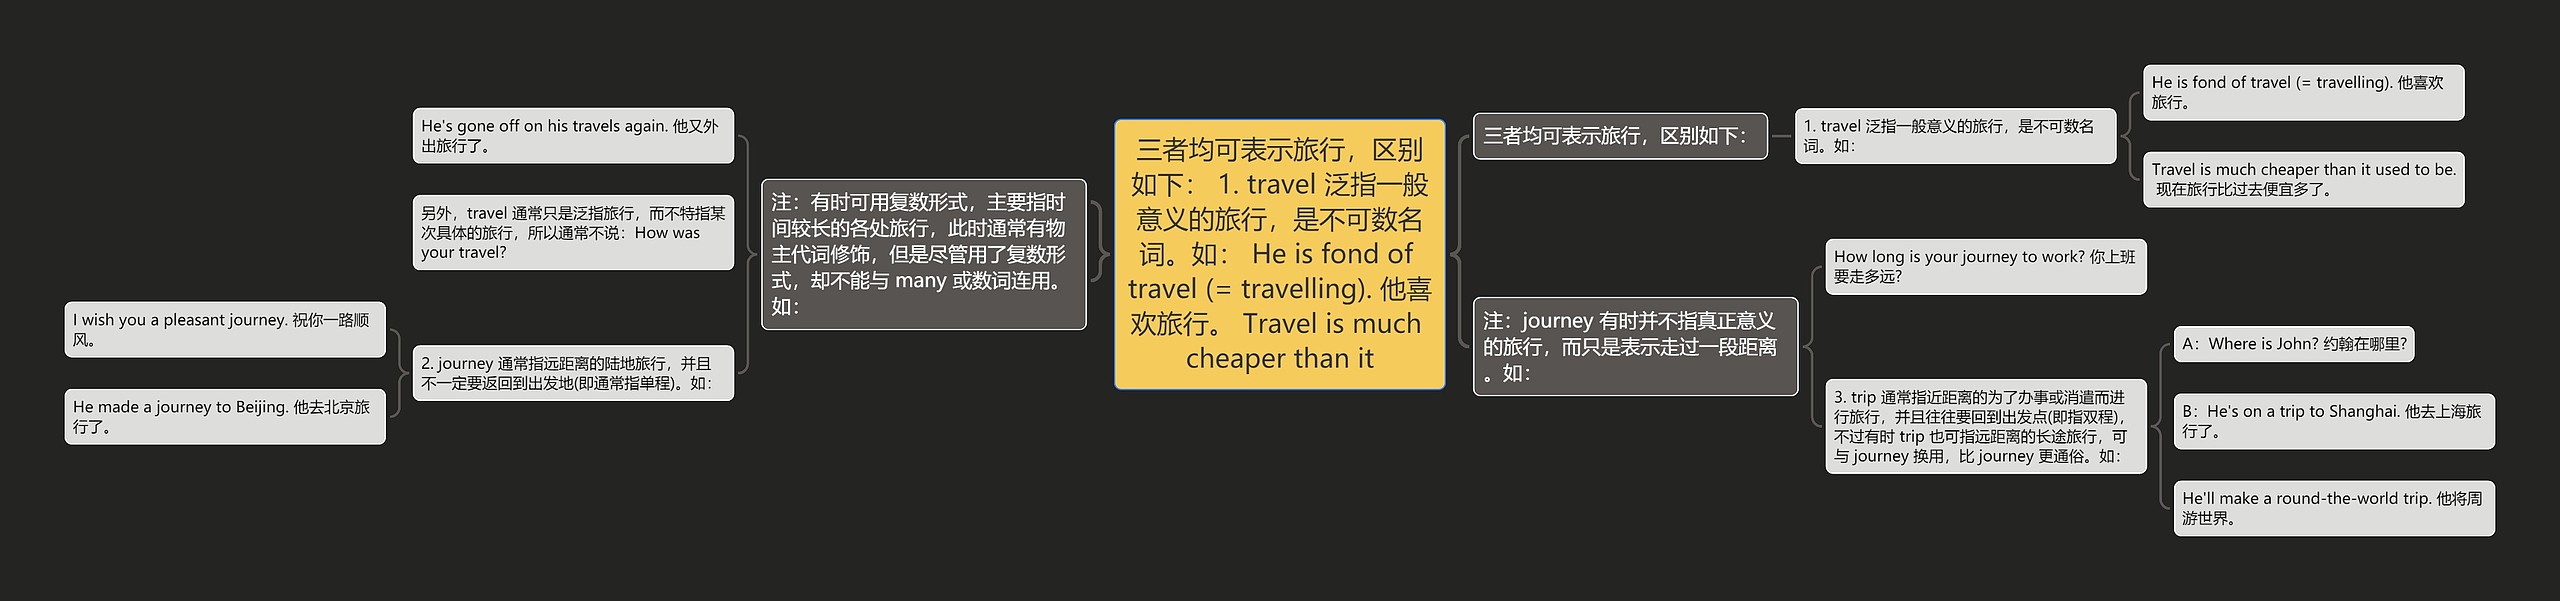 三者均可表示旅行，区别如下： 1. travel 泛指一般意义的旅行，是不可数名词。如： He is fond of travel (= travelling). 他喜欢旅行。 Travel is much cheaper than it思维导图